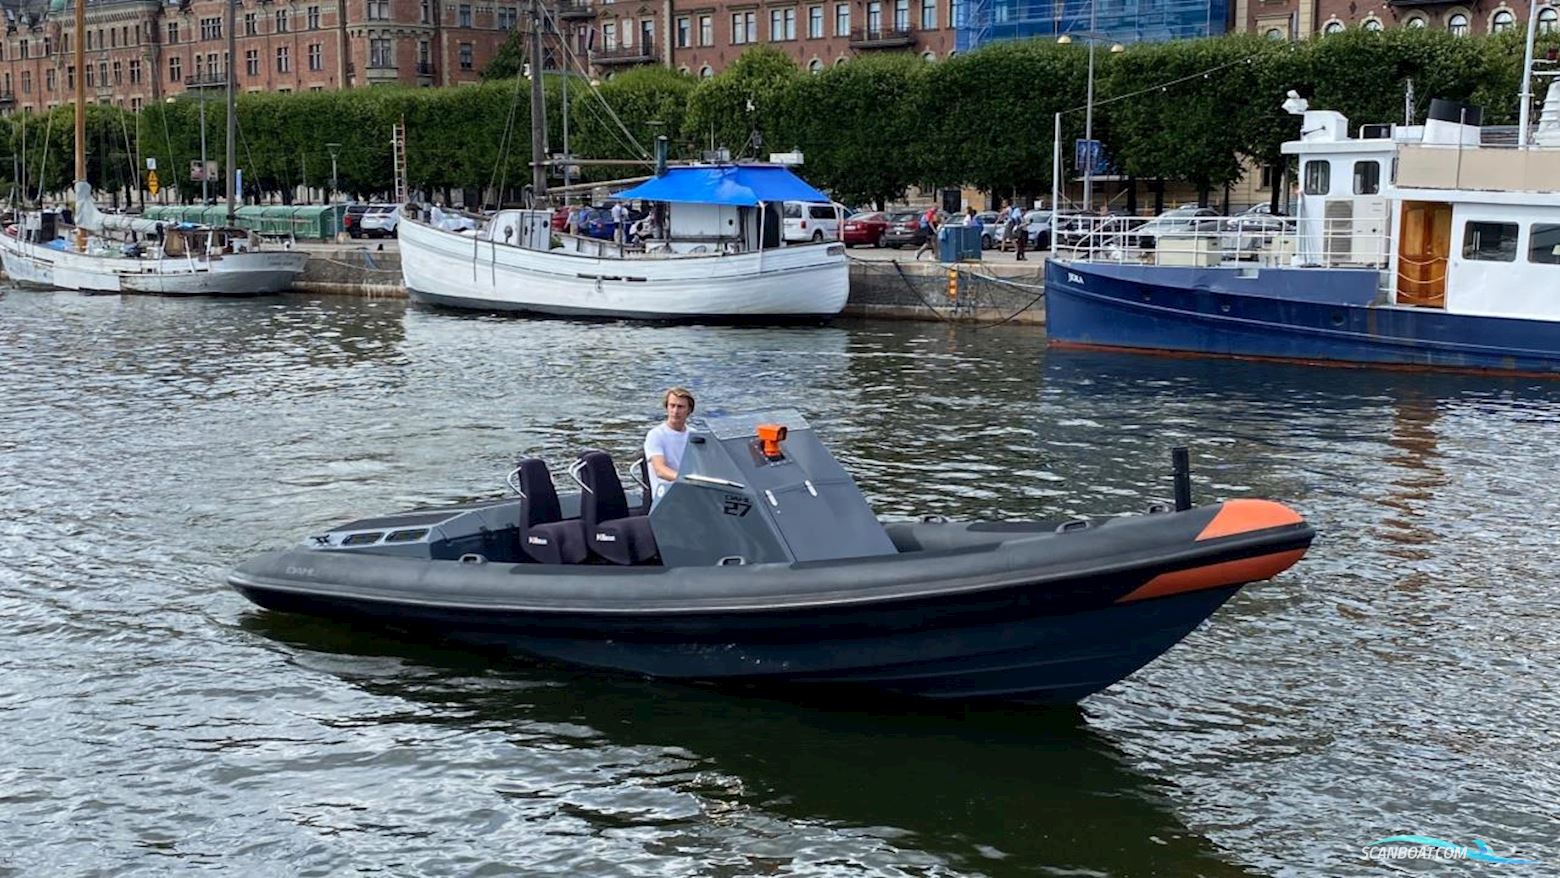 Dahl 27 Motor boat 2012, with Volvo Penta engine, Sweden